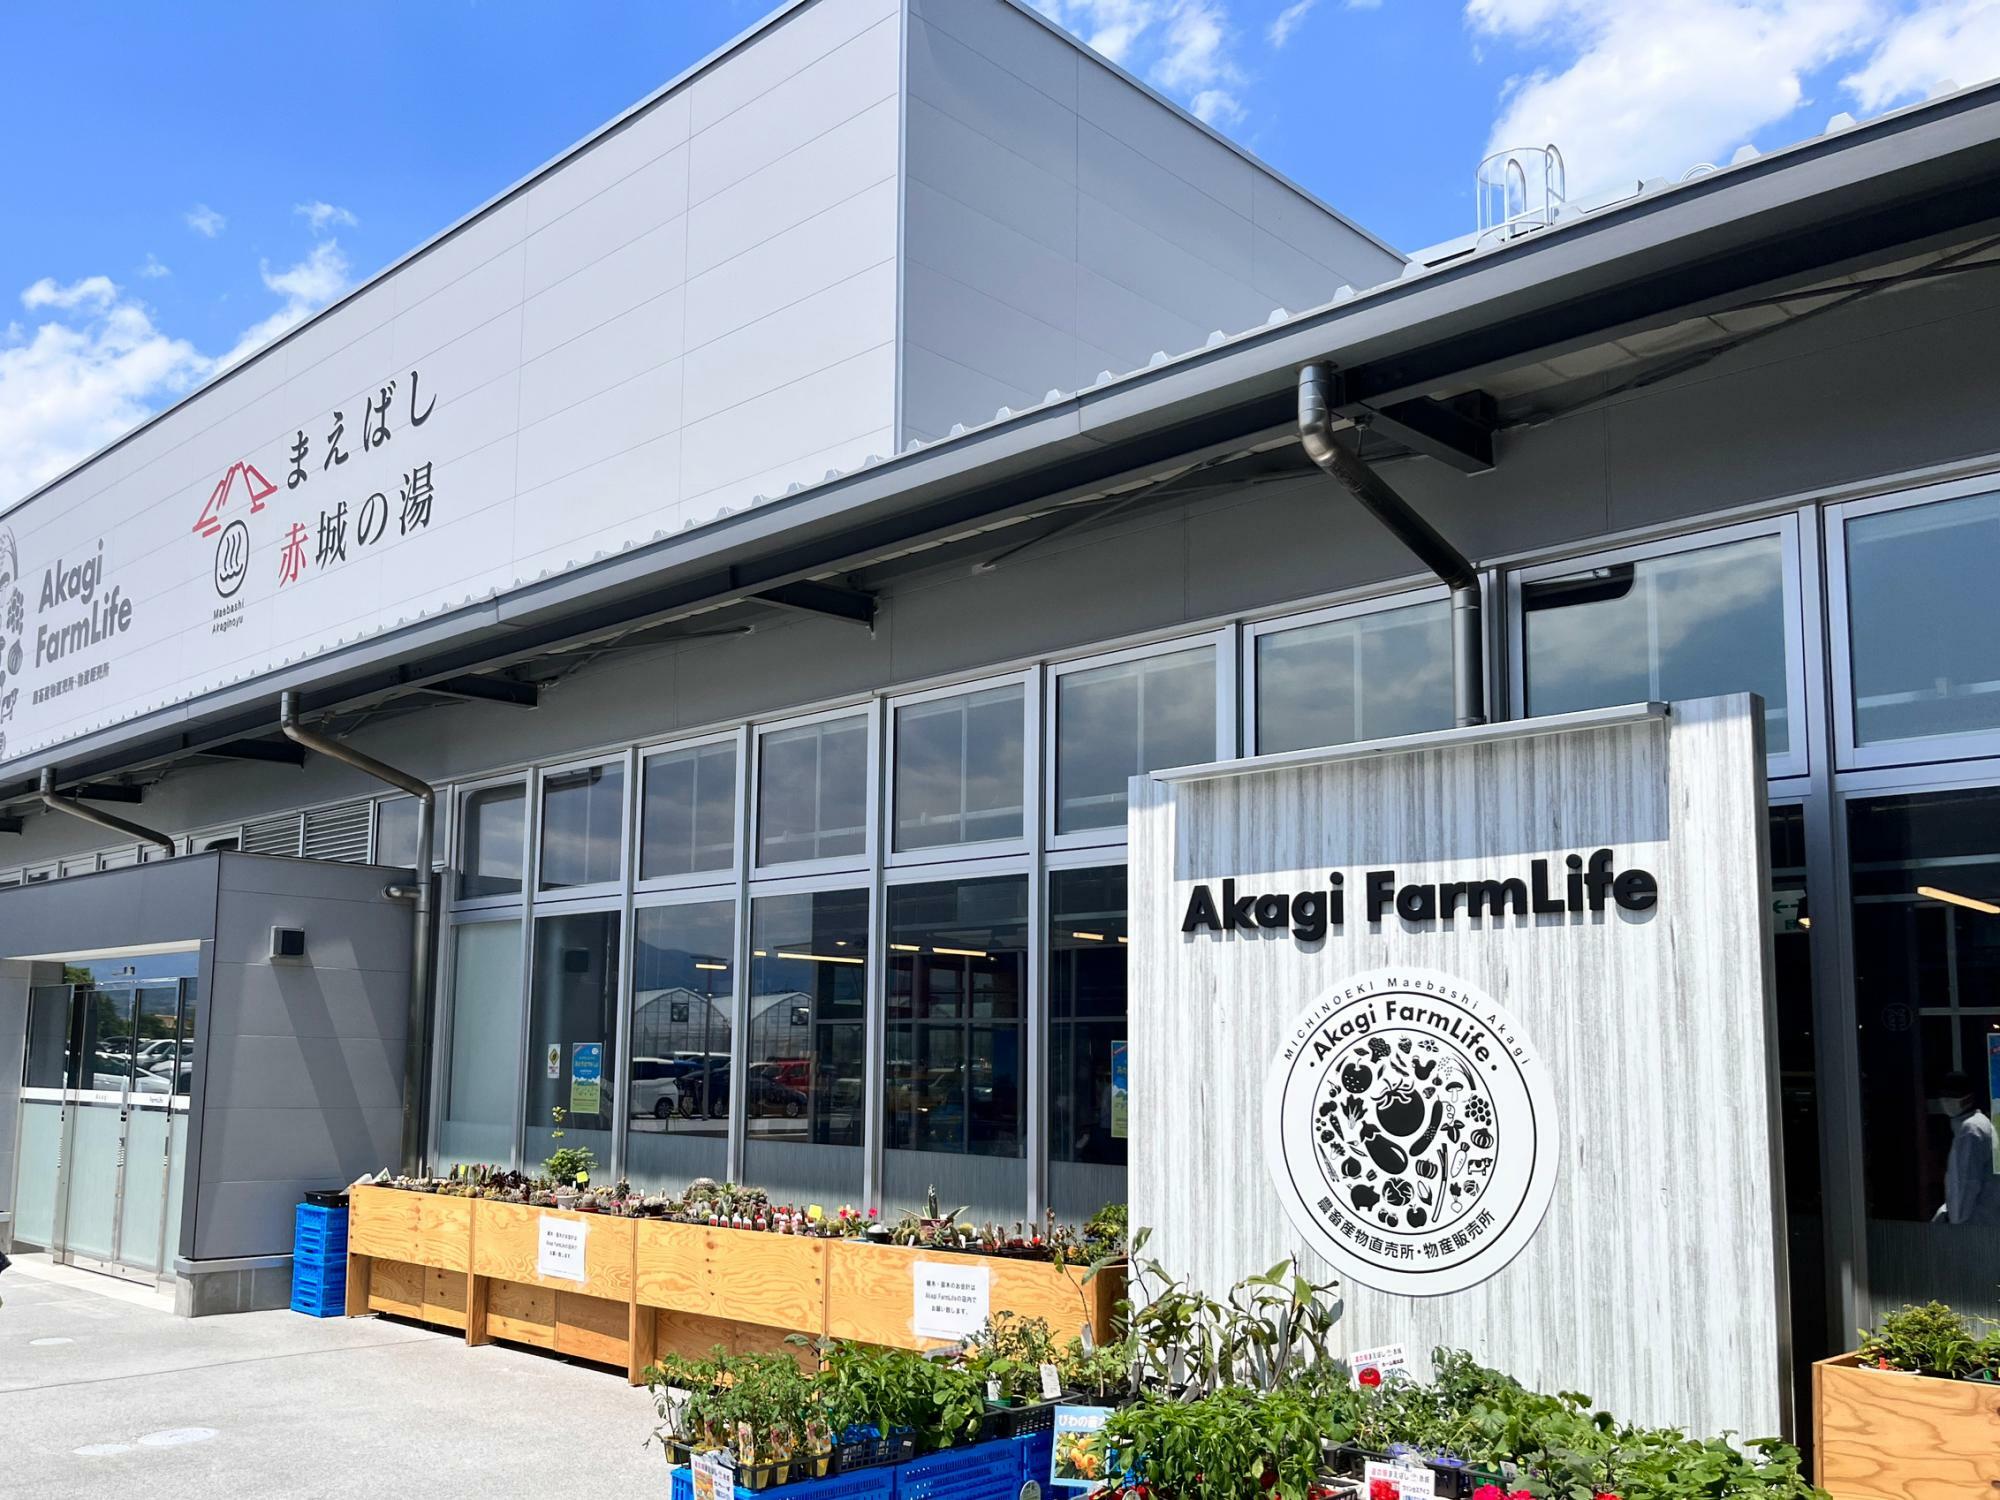 「Akagi FarmLife 農畜産物直売所・物産販売所」の店舗外観